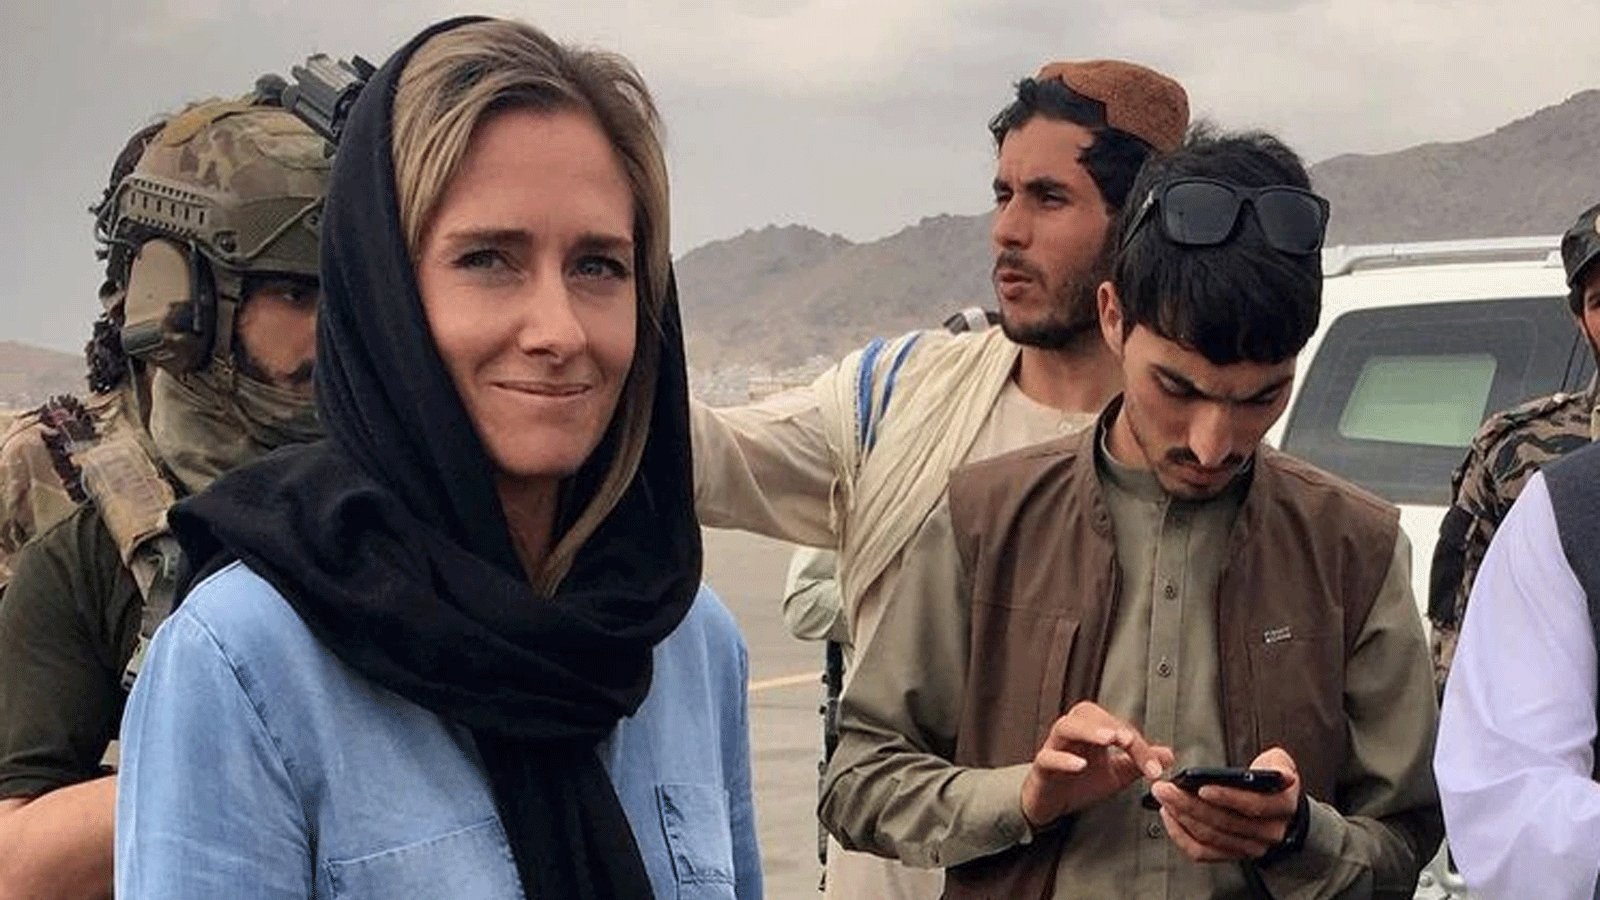 المراسل شارلوت بيليس (يسار) مع مسؤولي طالبان في كابول في أيلول/سبتمبر 2021(إنستغرام)